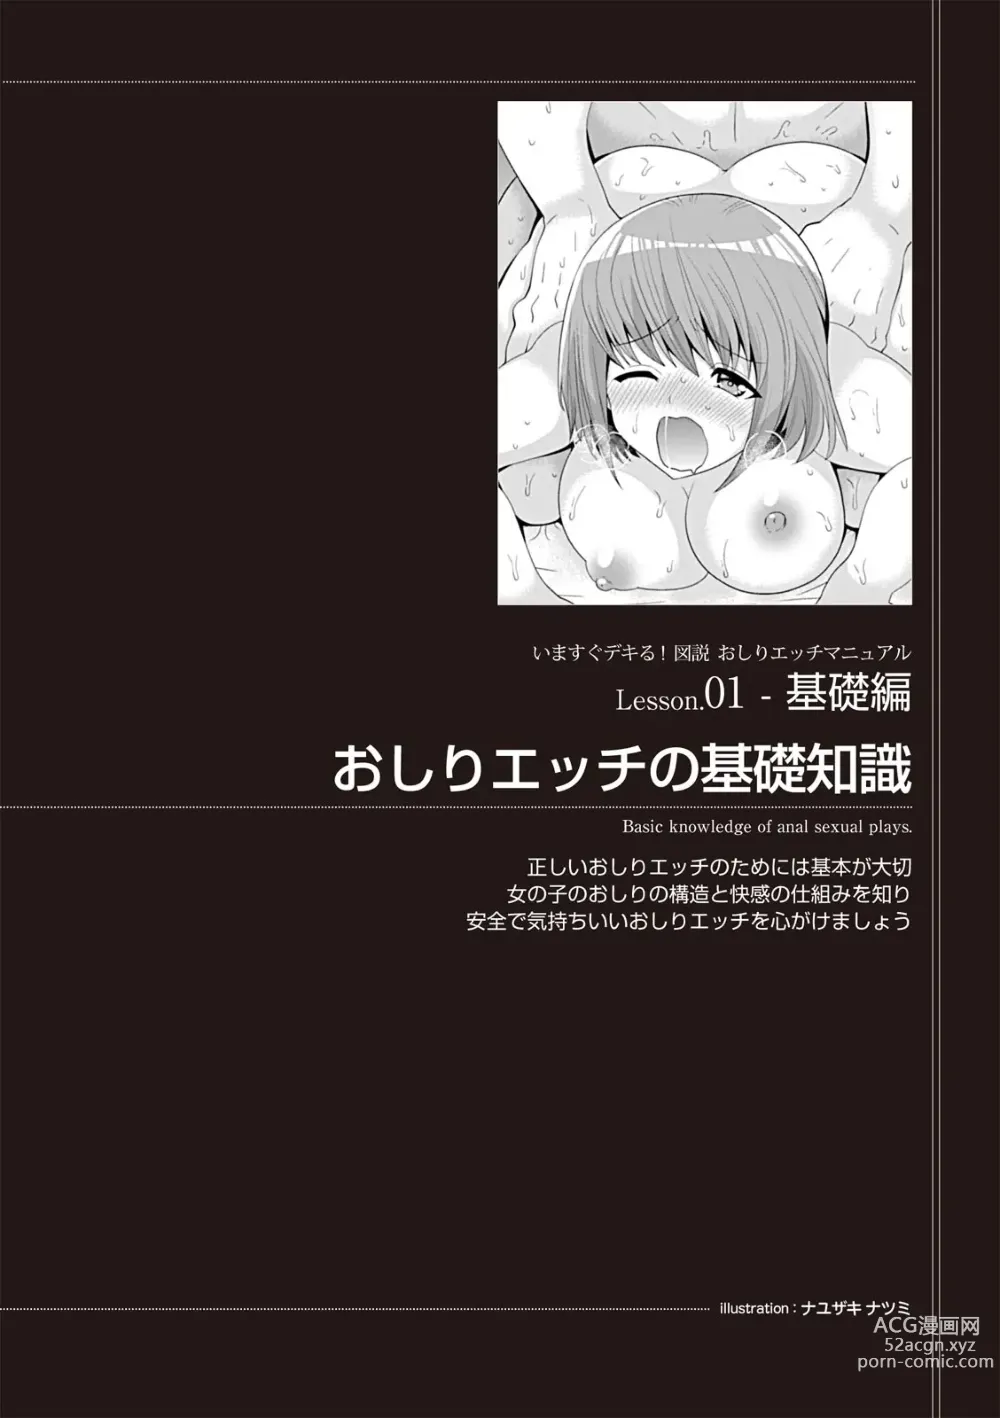 Page 7 of manga いますぐデキる 図説おしりエッチマニュアル